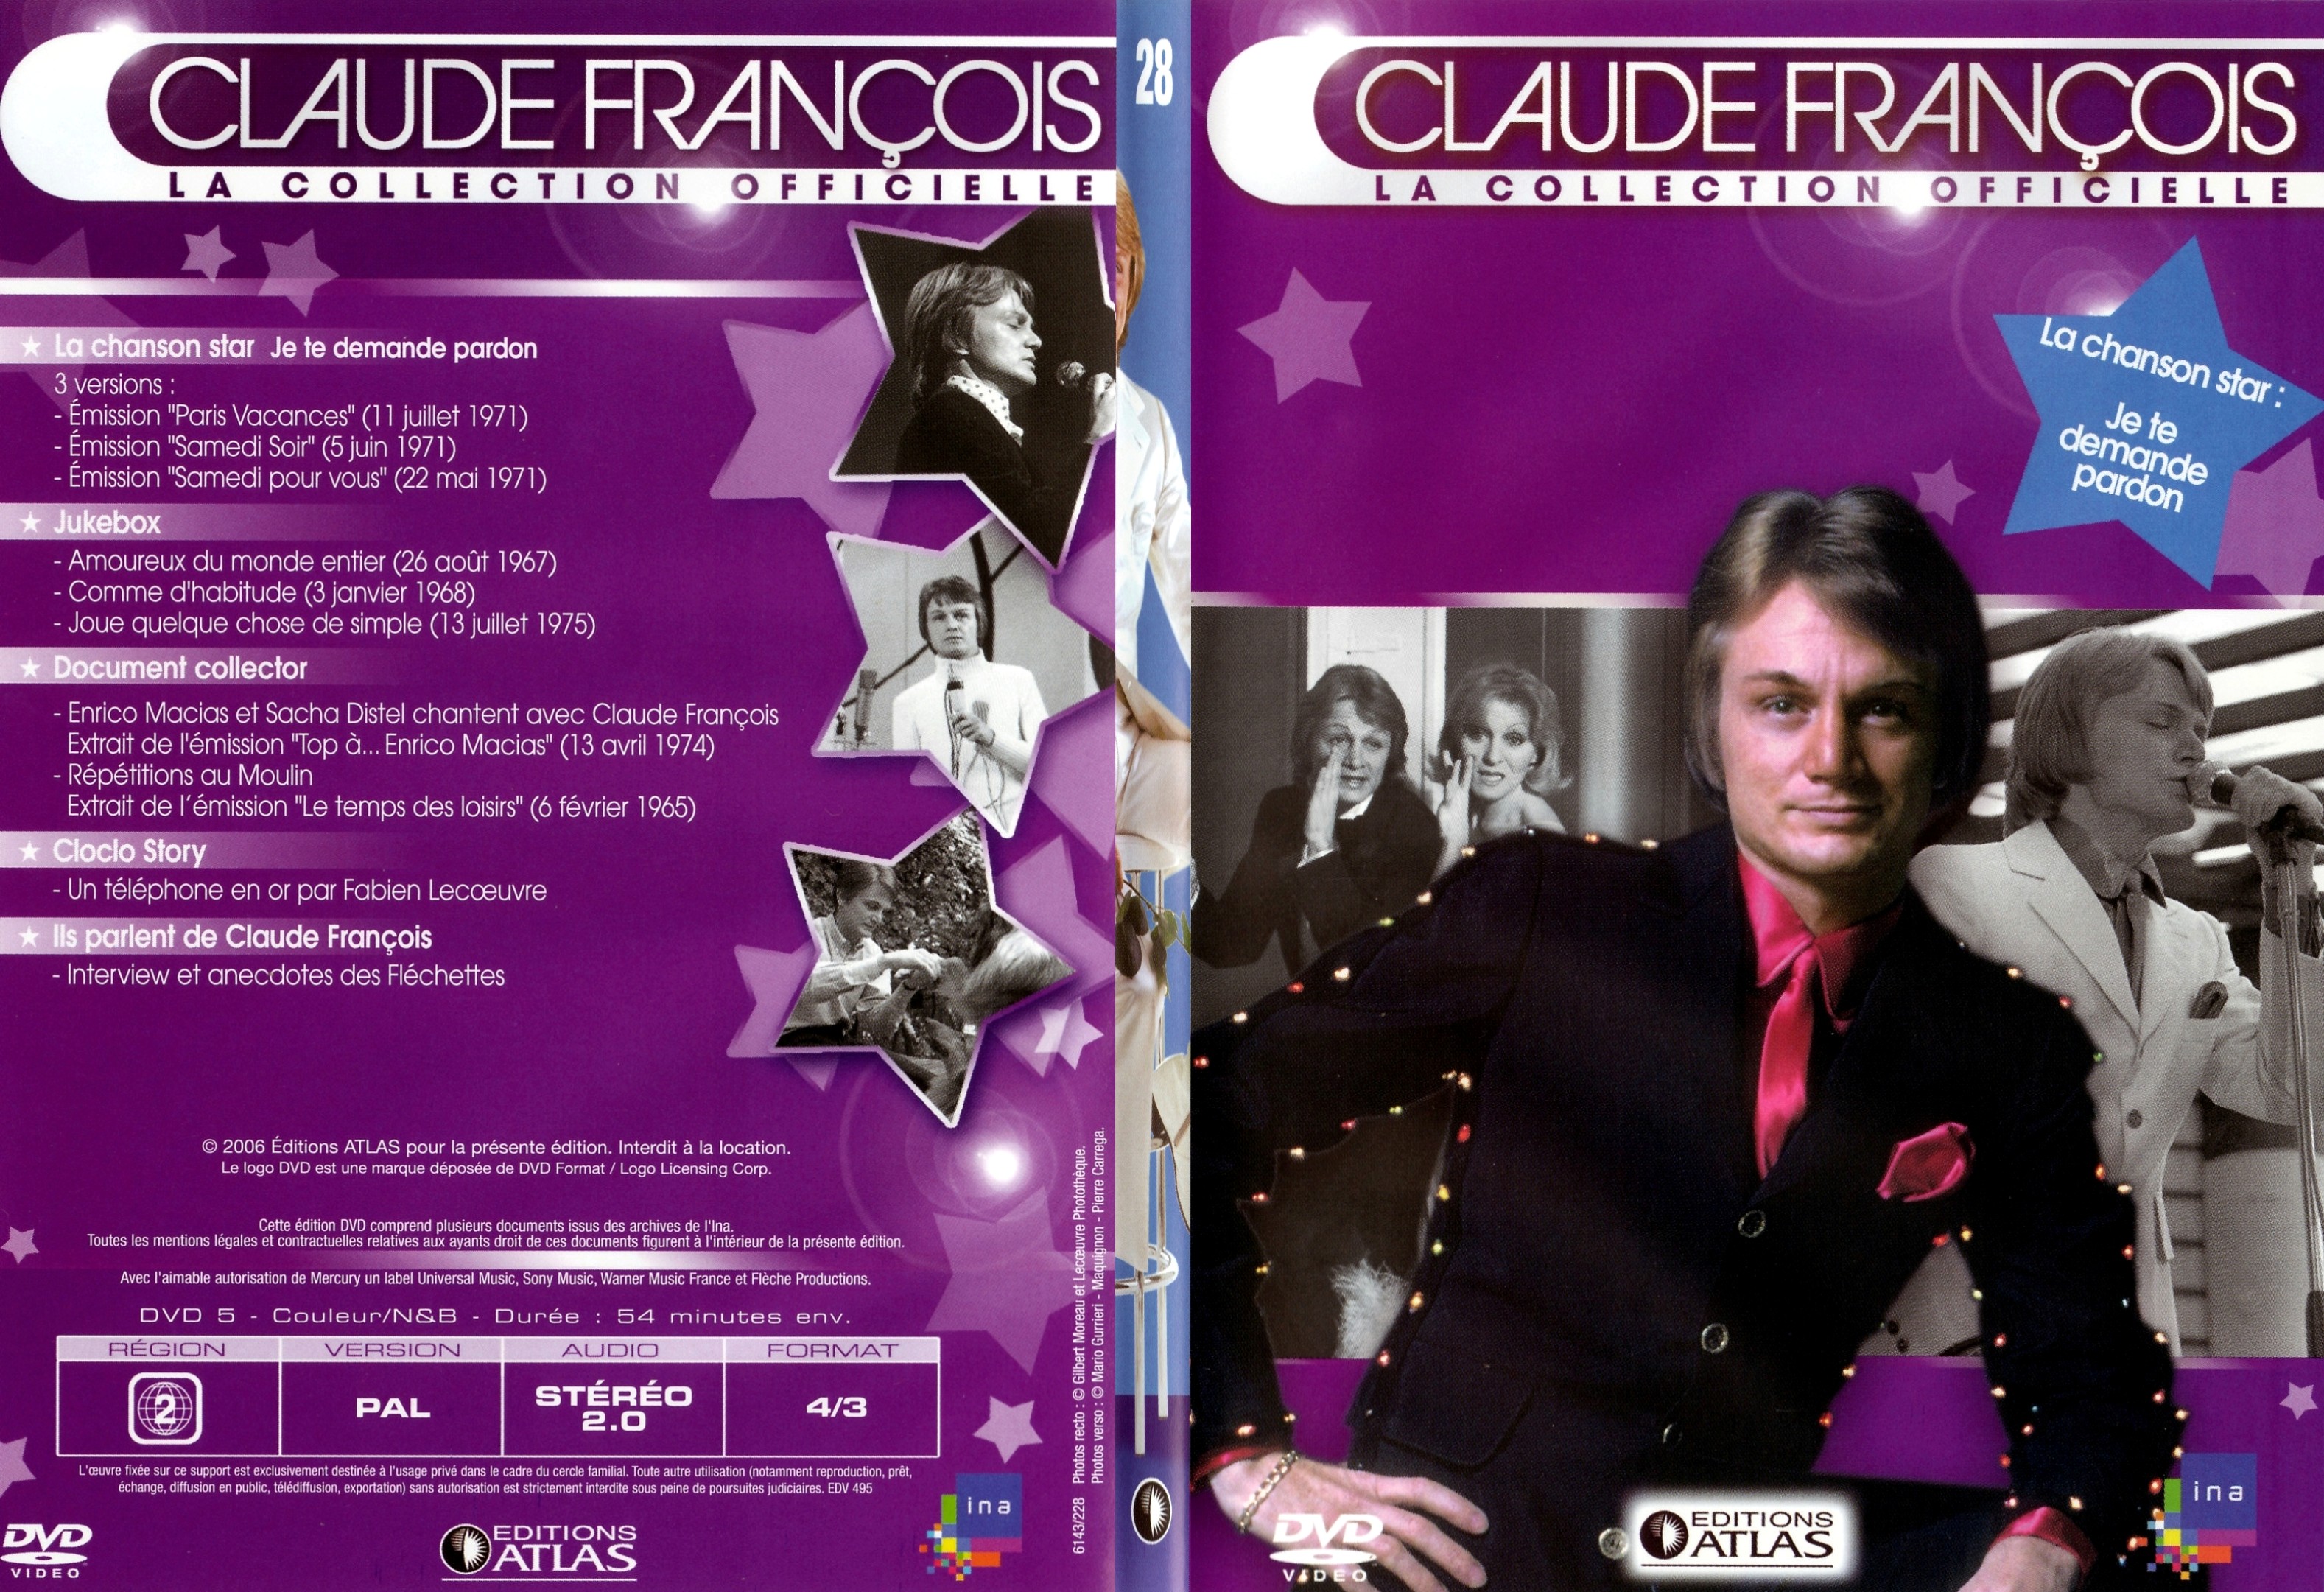 Jaquette DVD Claude francois le collection officielle vol 28 - SLIM